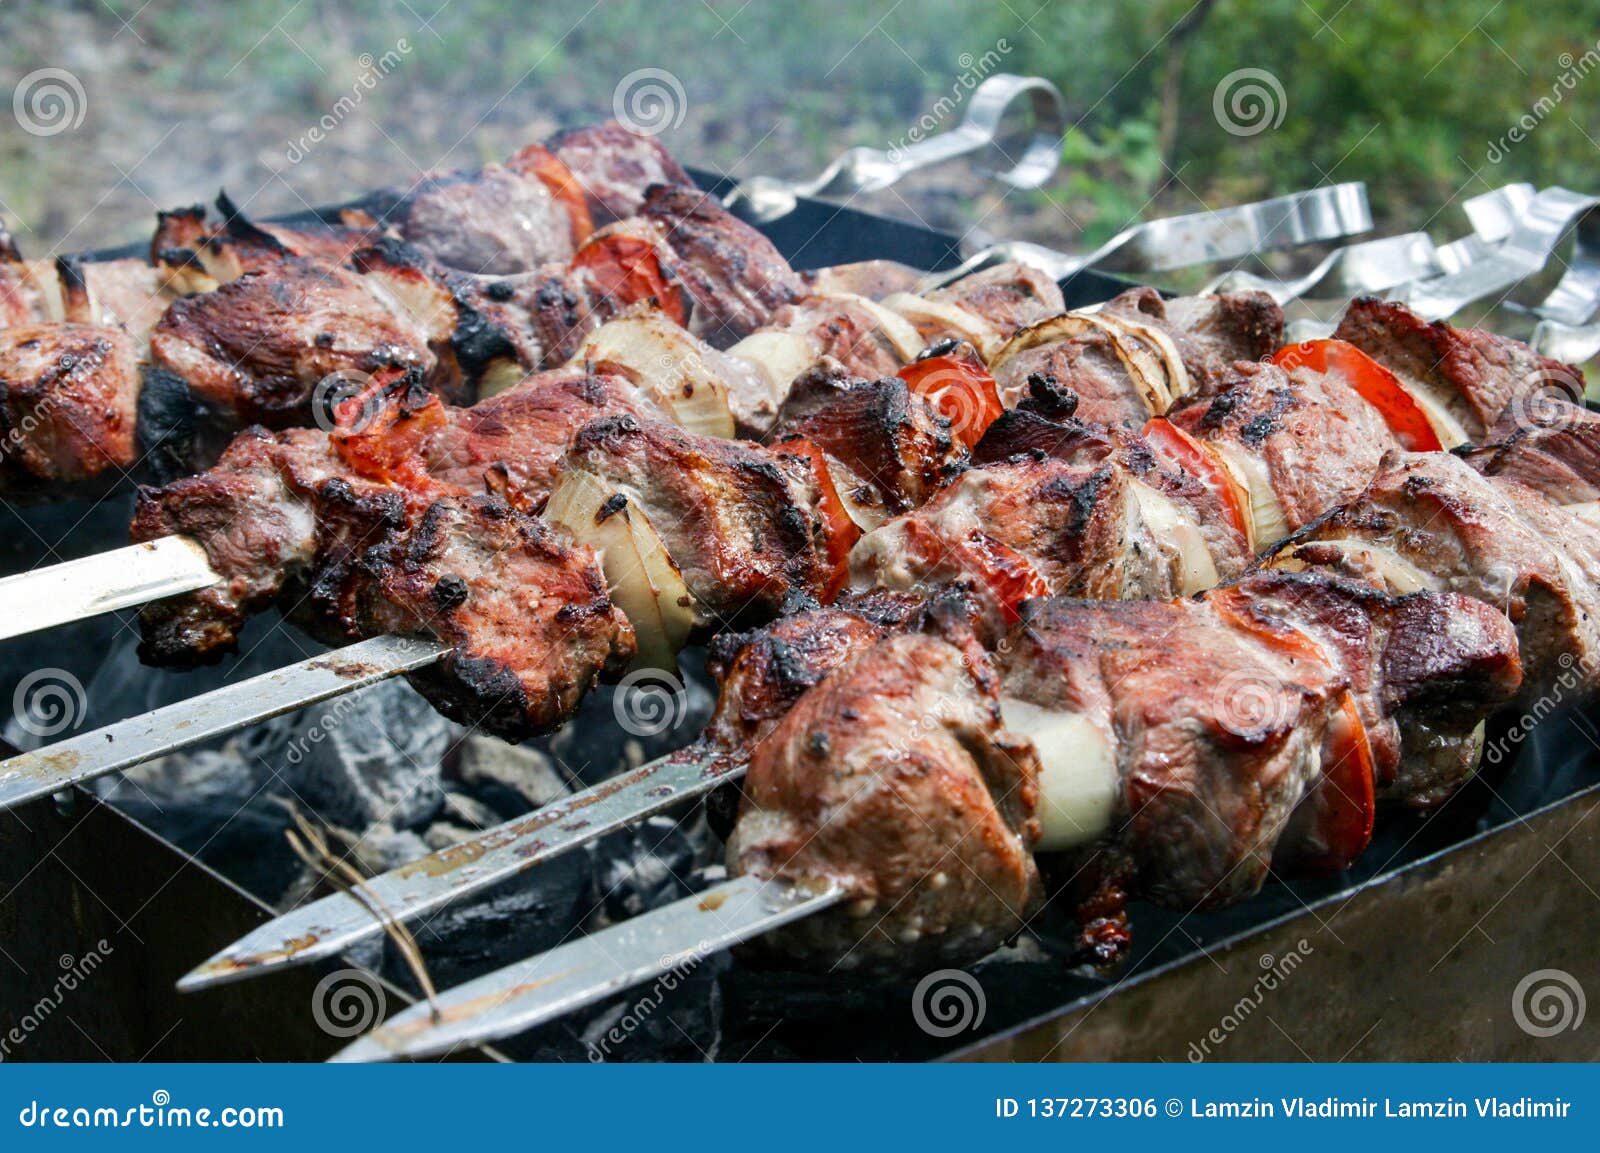 Dish of meat skewers stock photo. Image of dietary, kebab - 137273306